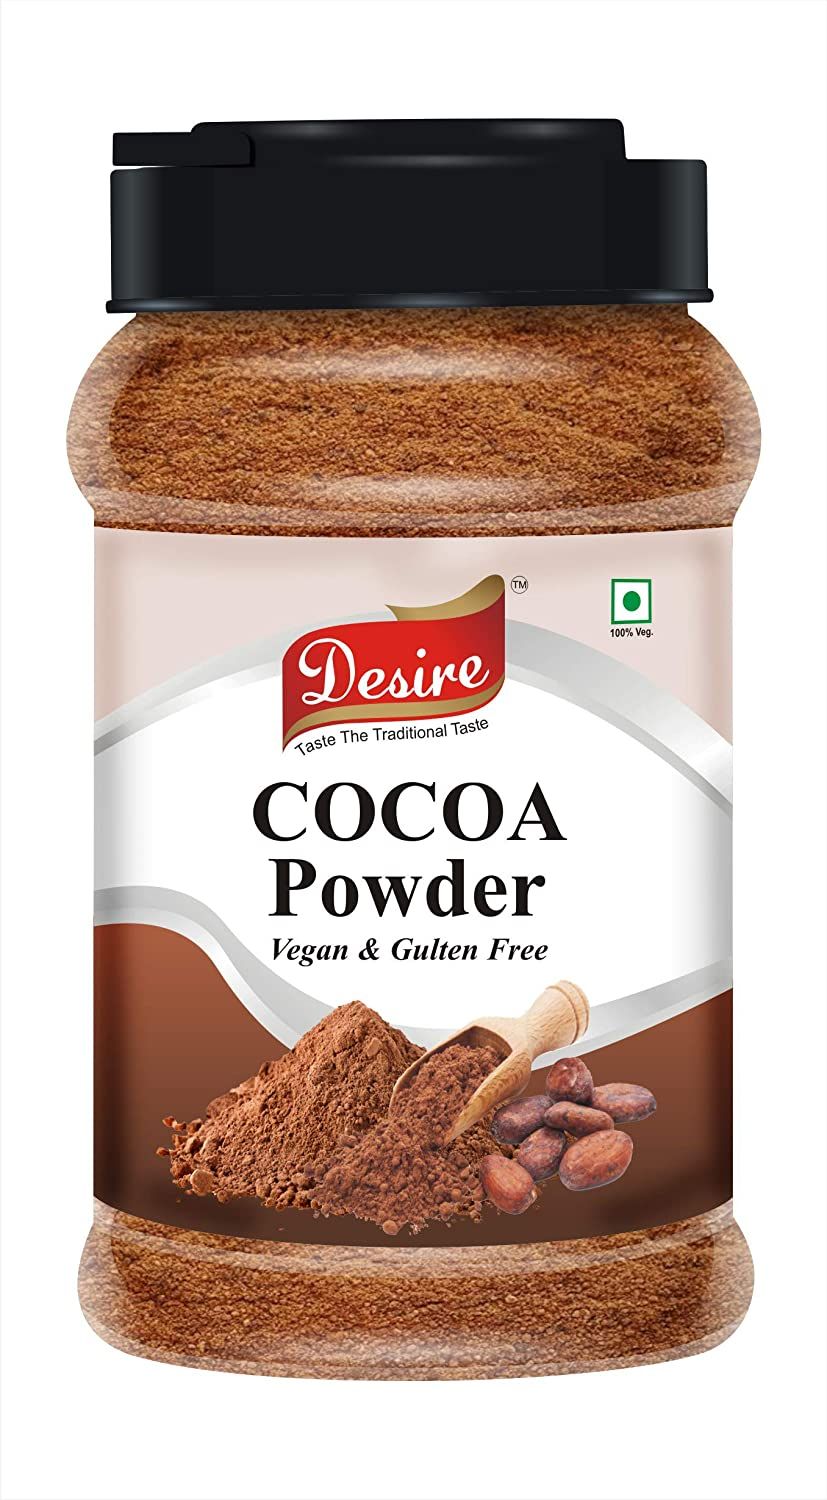 Desire Cocoa Powder Image